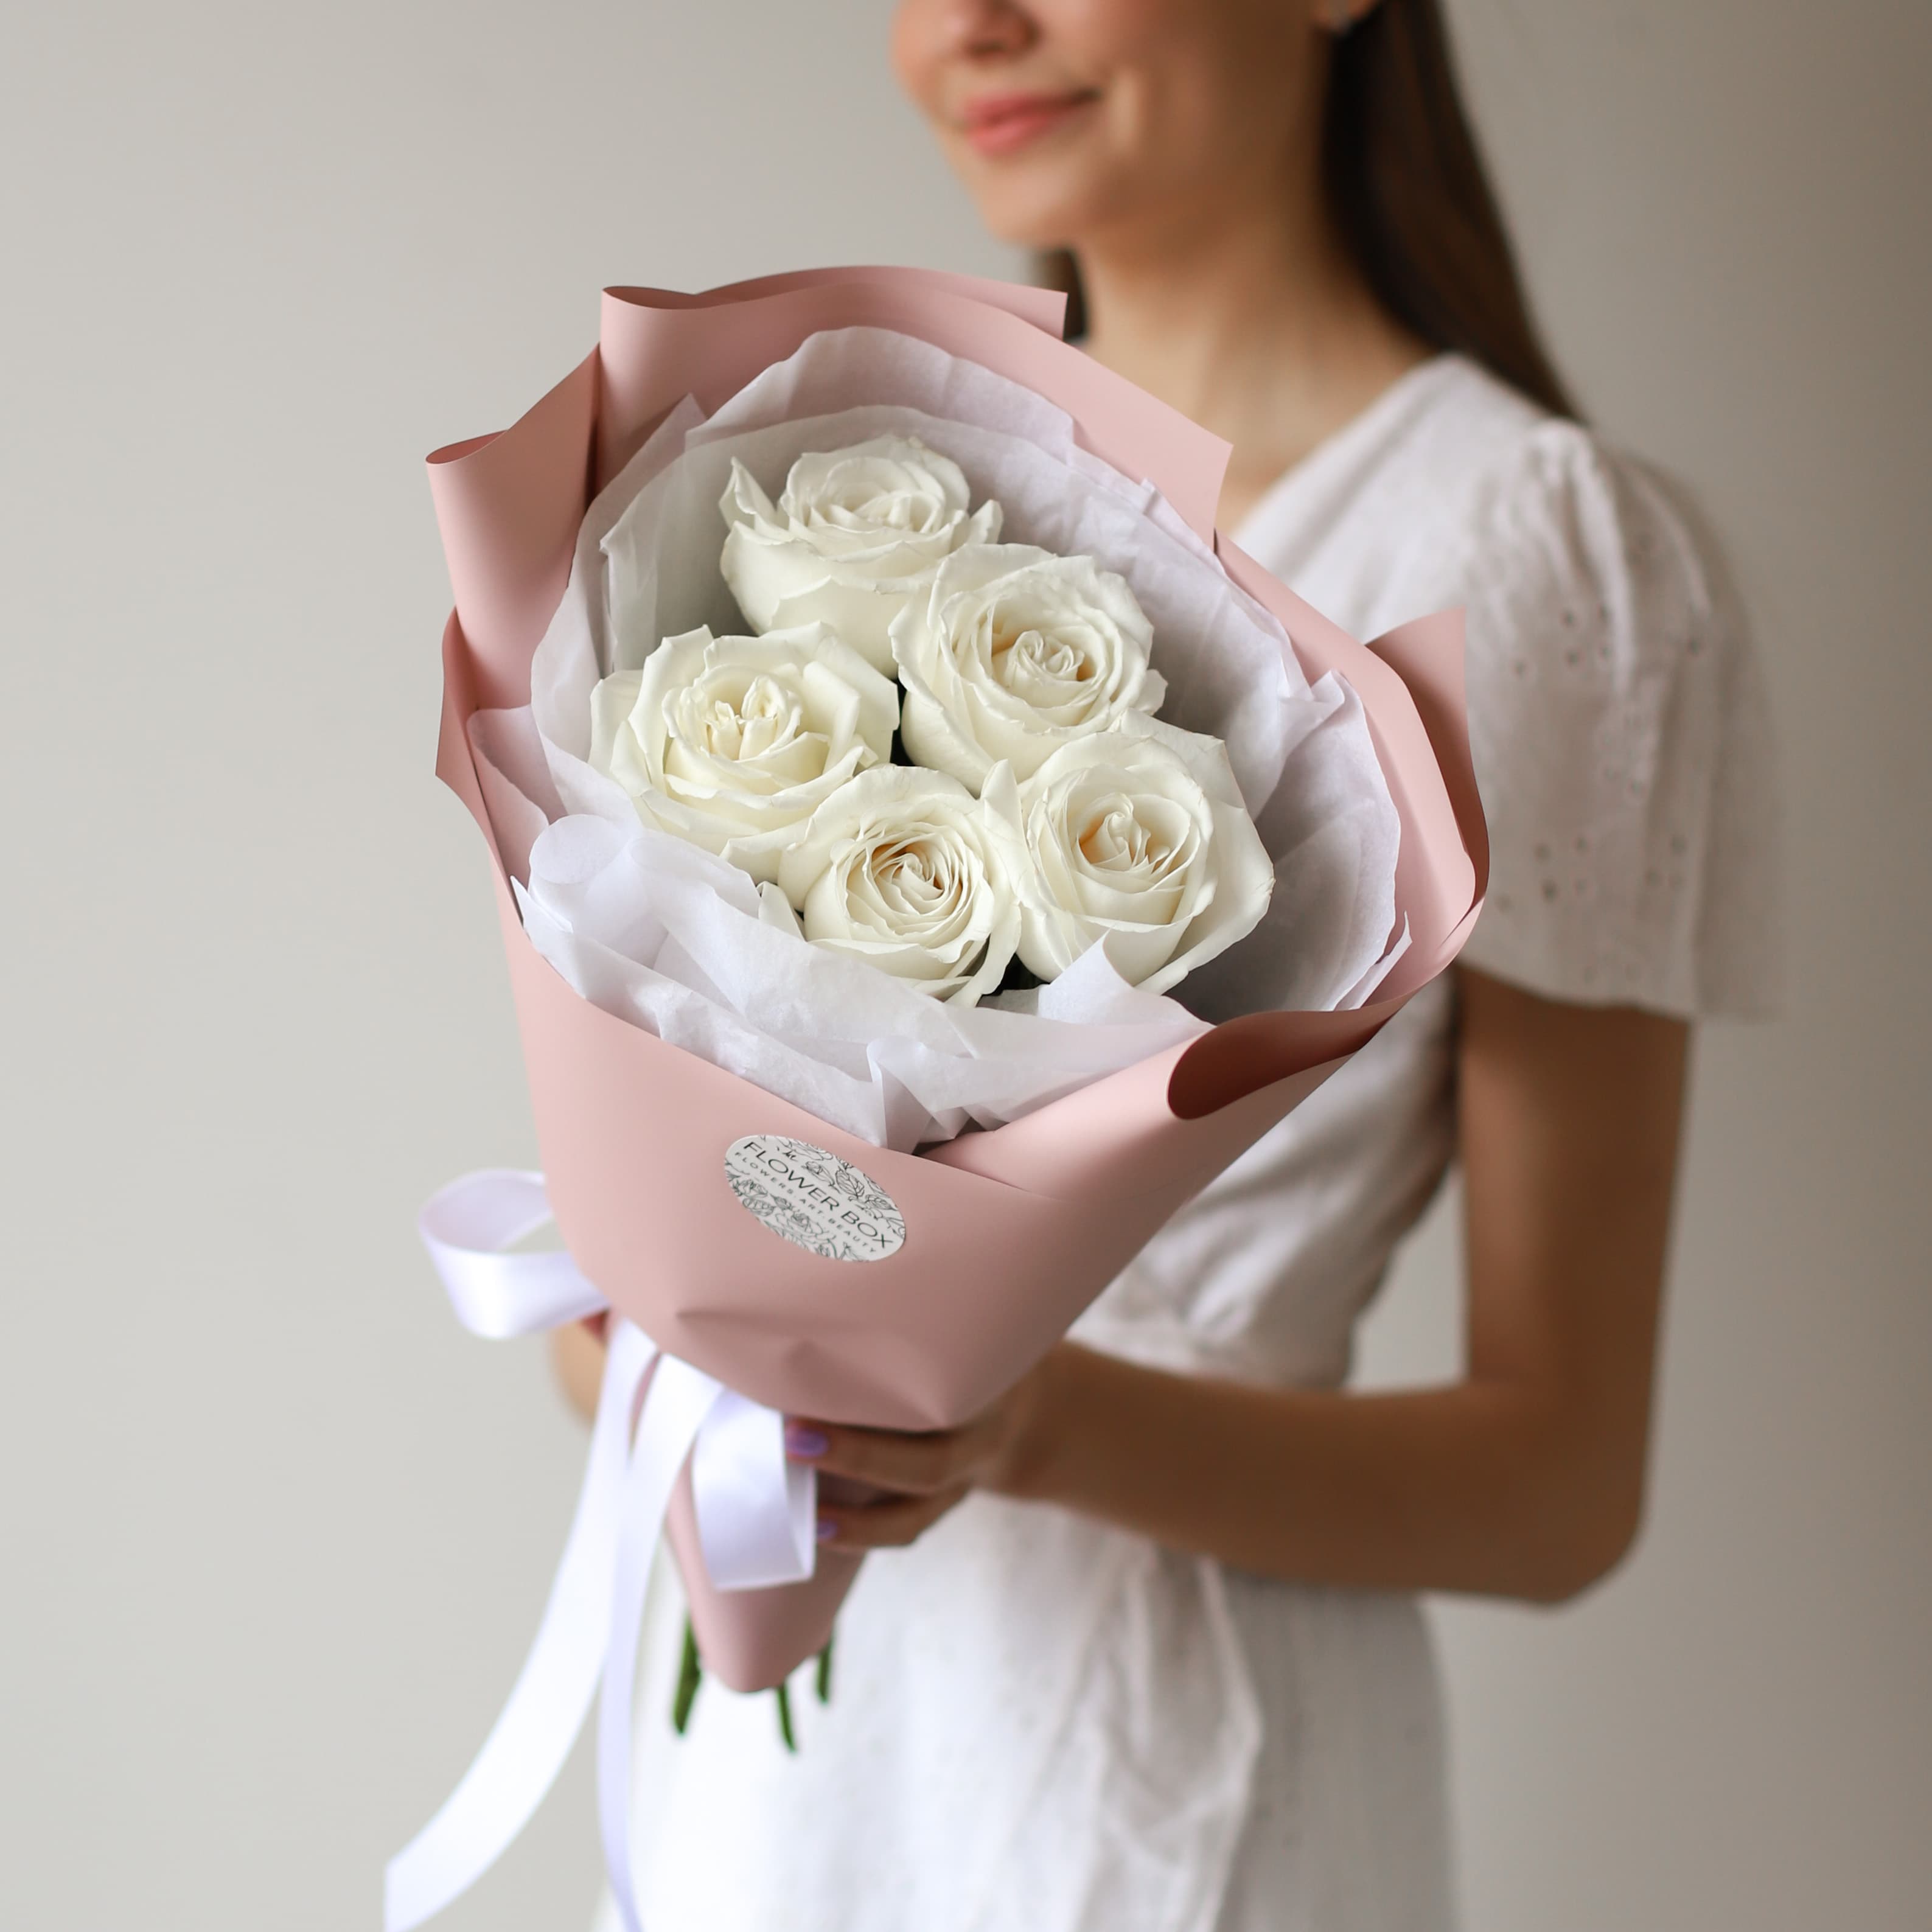 Белые розы в нежном оформлении (5 шт) №1574 - Фото 13